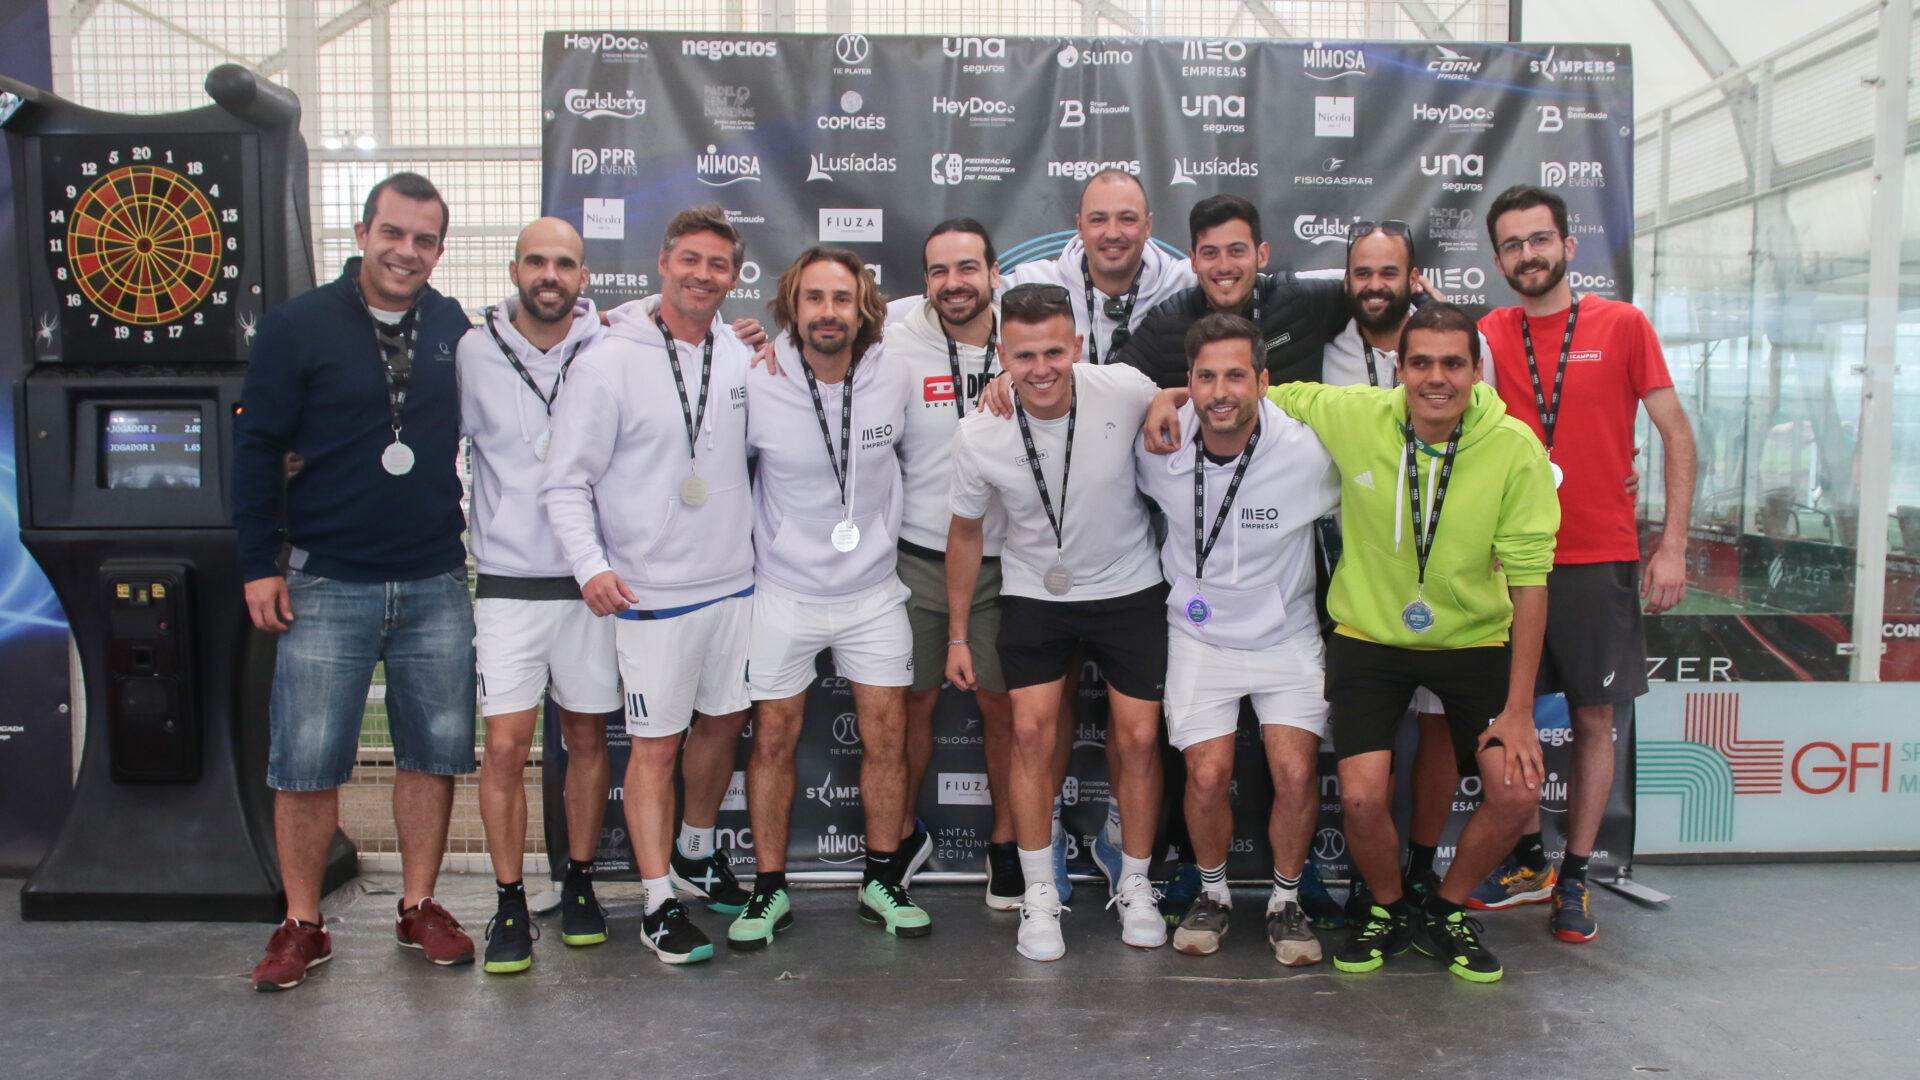 MEO Empresas faz “dobradinha” de finalistas na etapa do Algarve